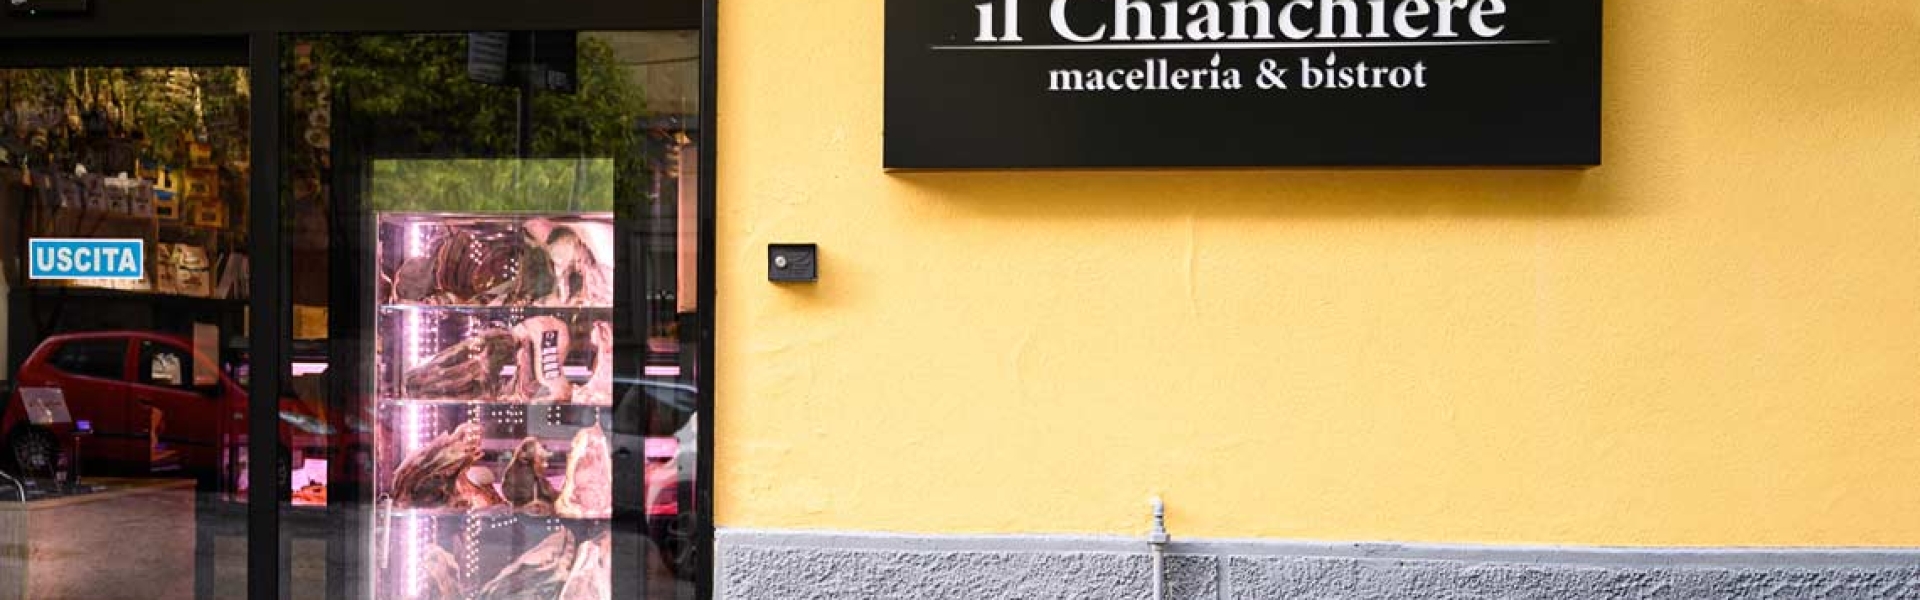 Benvenuti nel mondo del gusto: Il Chianchiere Macelleria & Bistrot